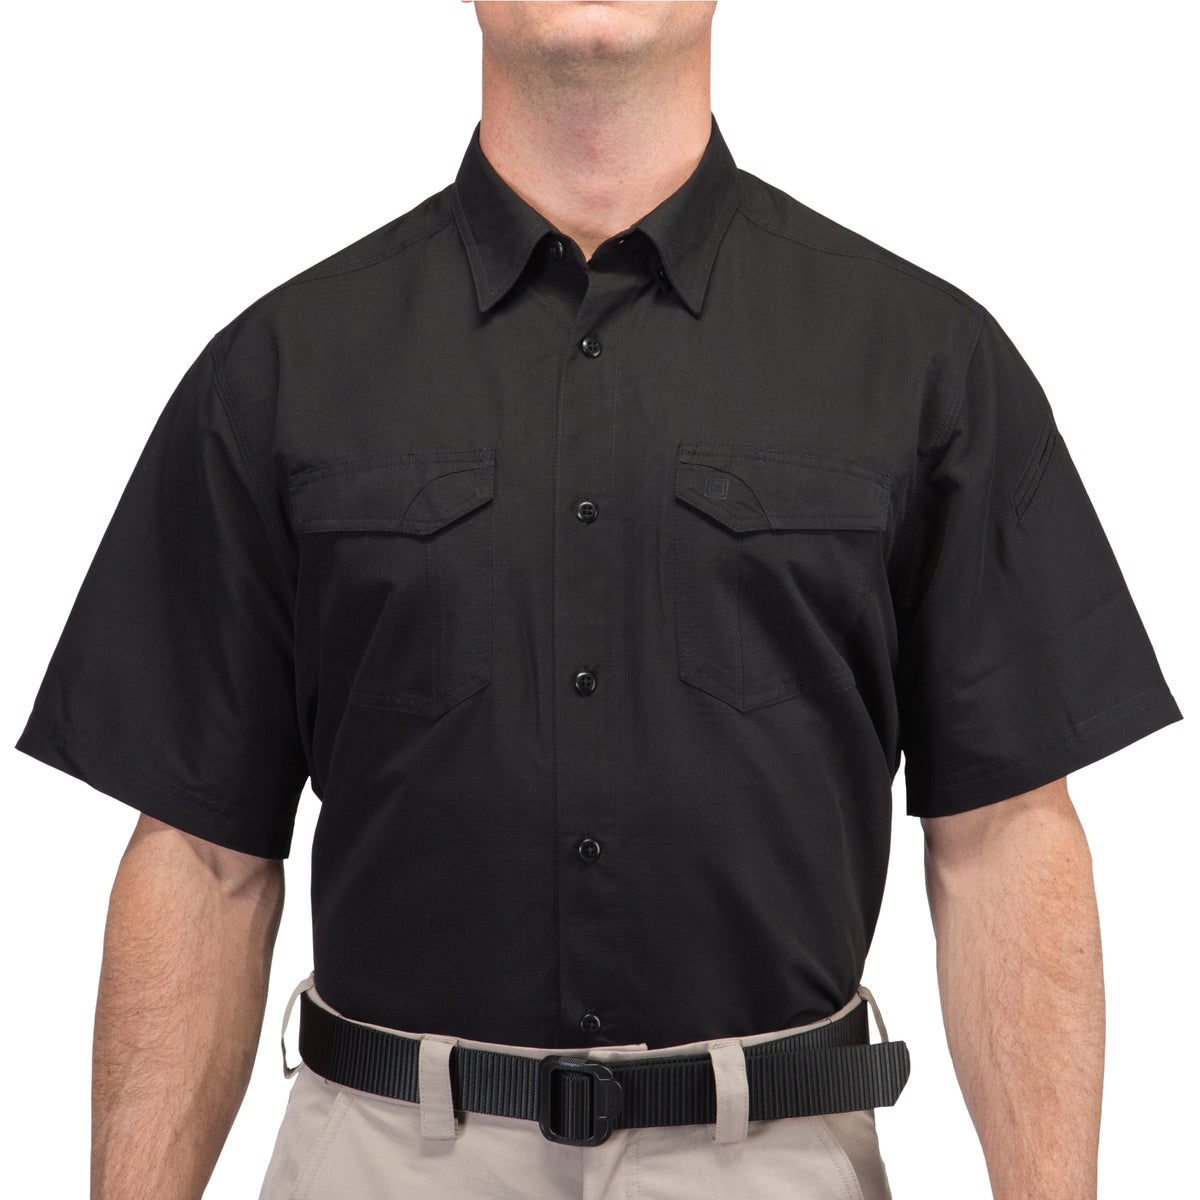 5.11 Tactical Fast-Tac Short-Sleeve Shirt Shirts 5.11 Tactical Small Black Tactical Gear Supplier Tactical Distributors Australia